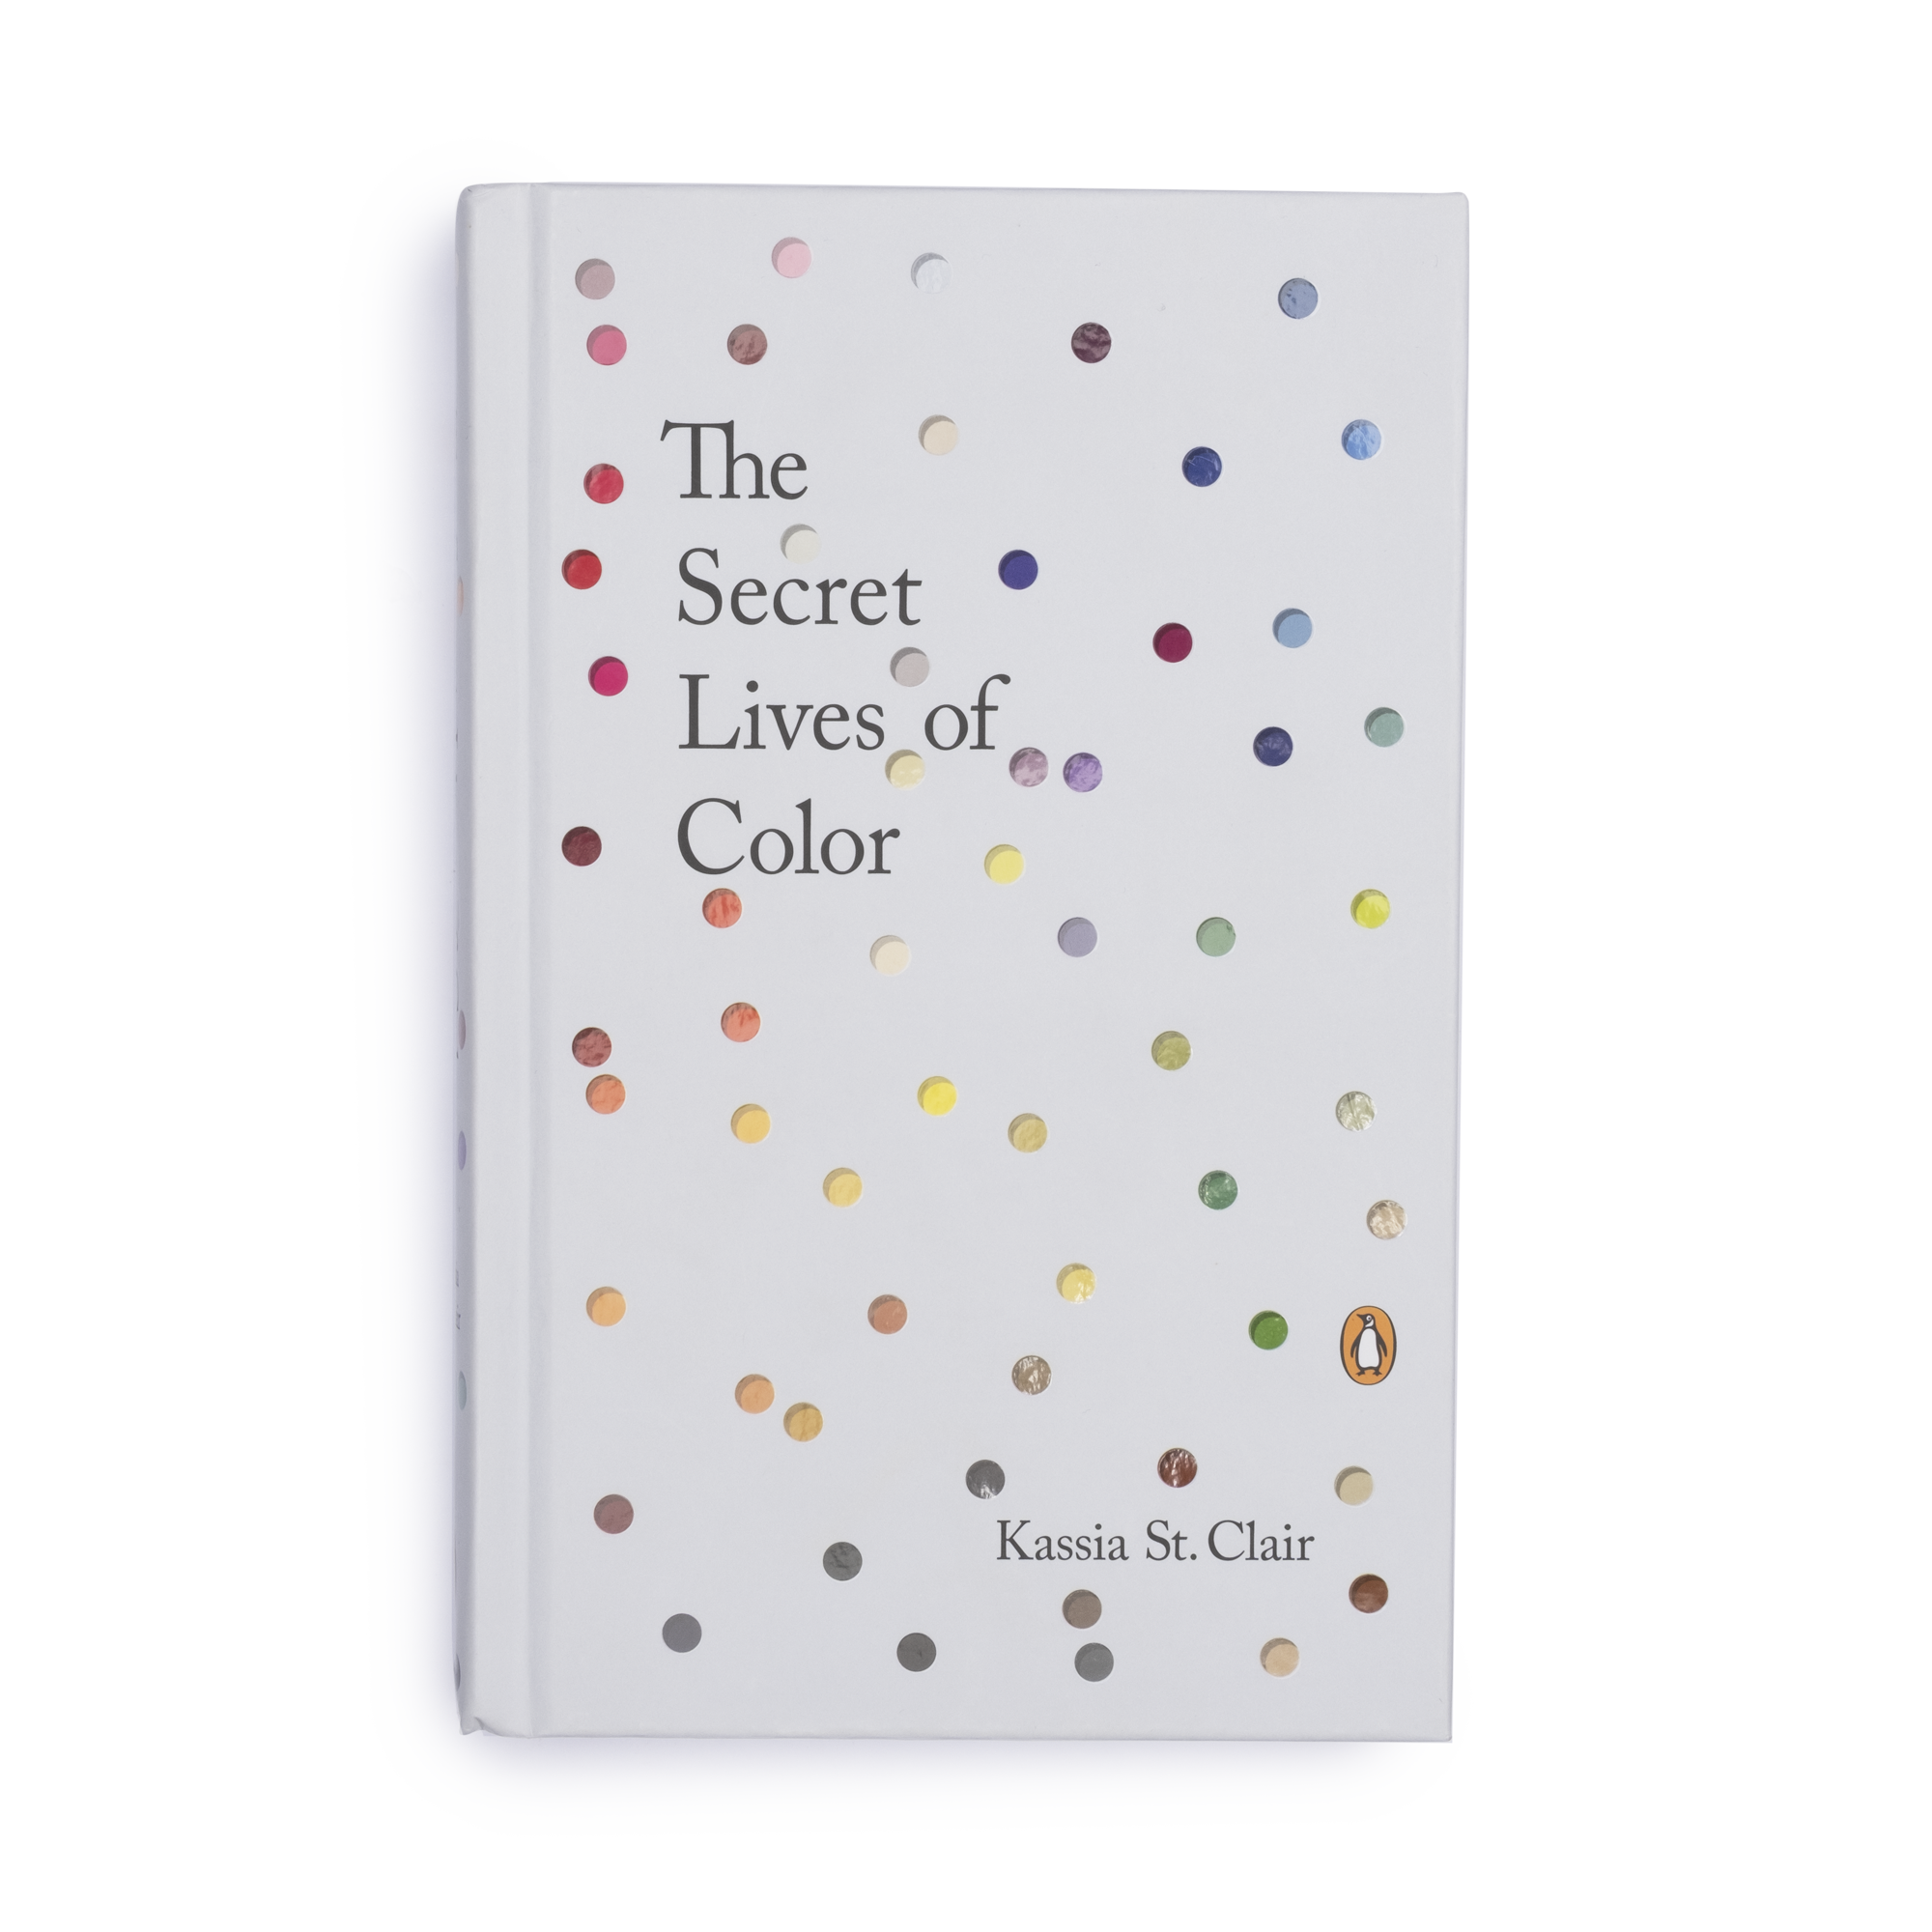 The Secret Lives of Color - colorfactoryshop